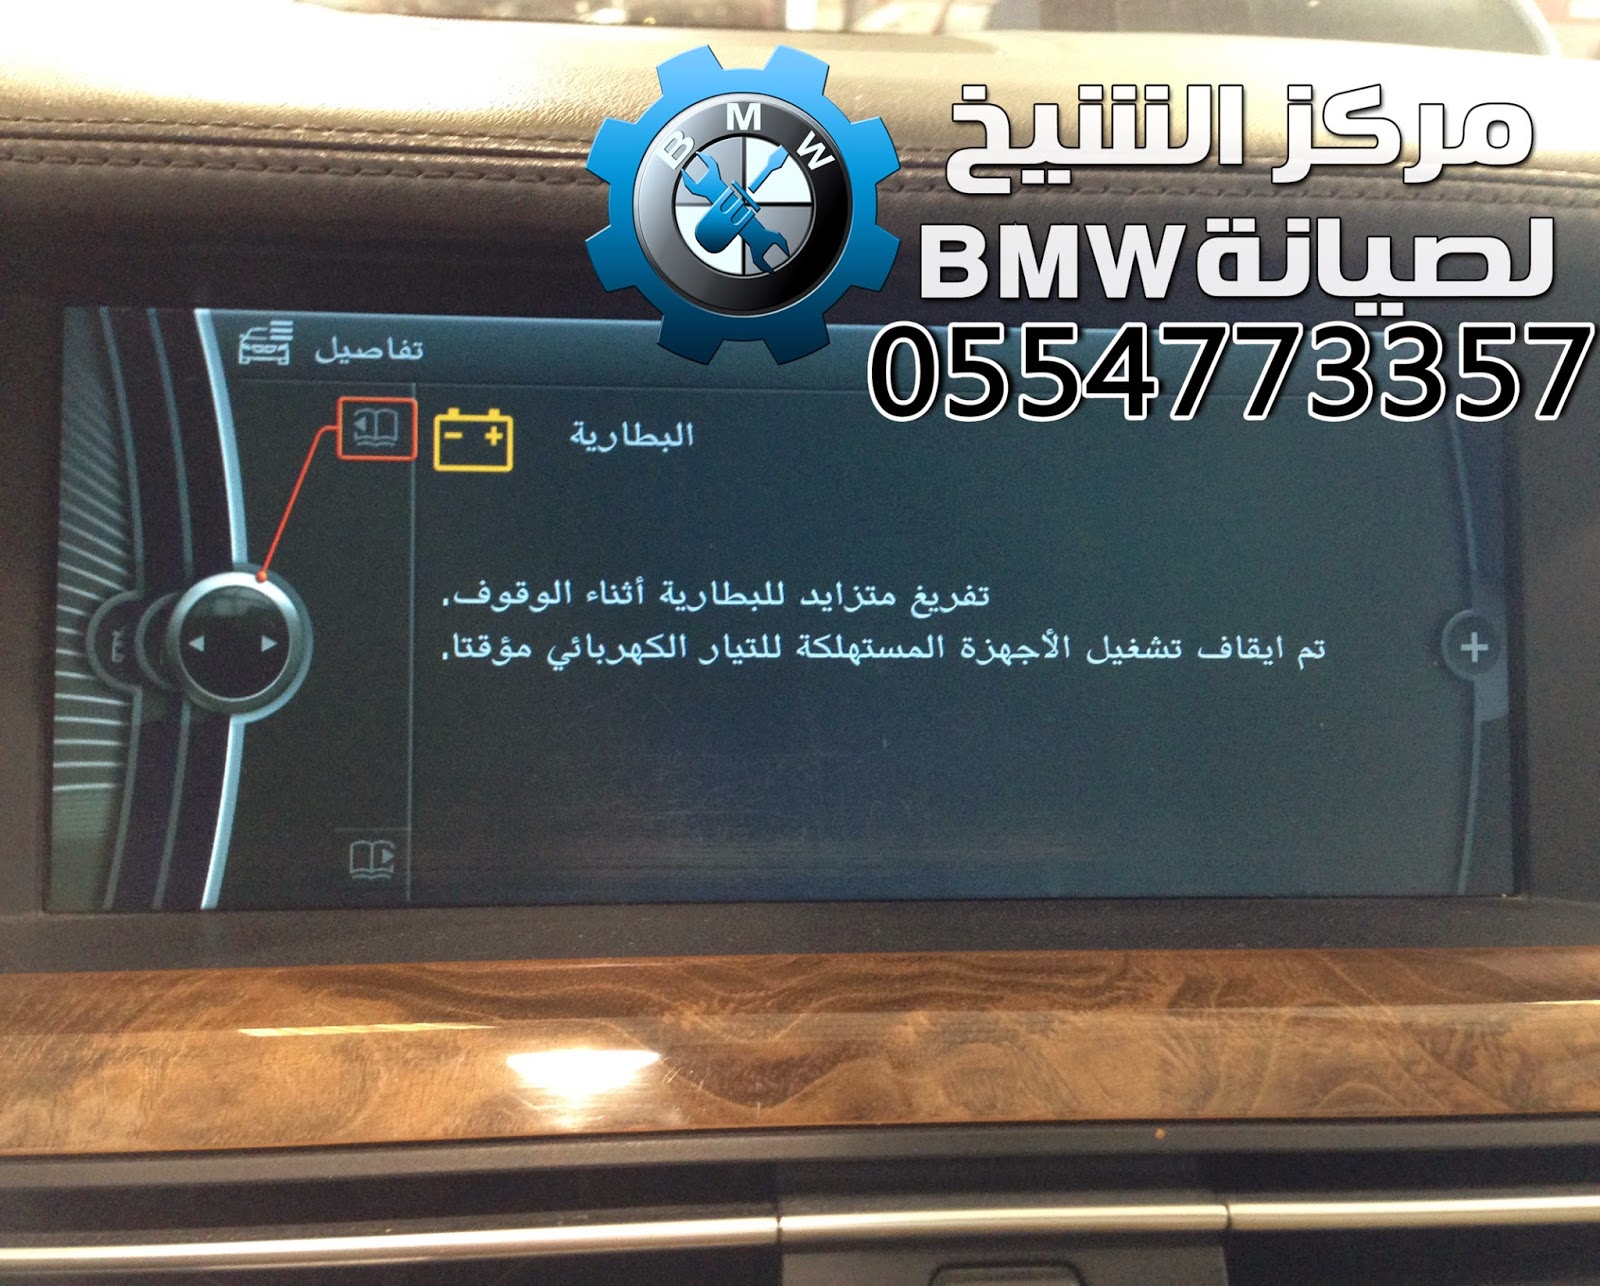 ميو ميو تدليك حوت  الشيخ بي ام دبليو - BMW Sheikh: تعريب شاشة BMW لجميع الفئات والموديلات  الحديثة